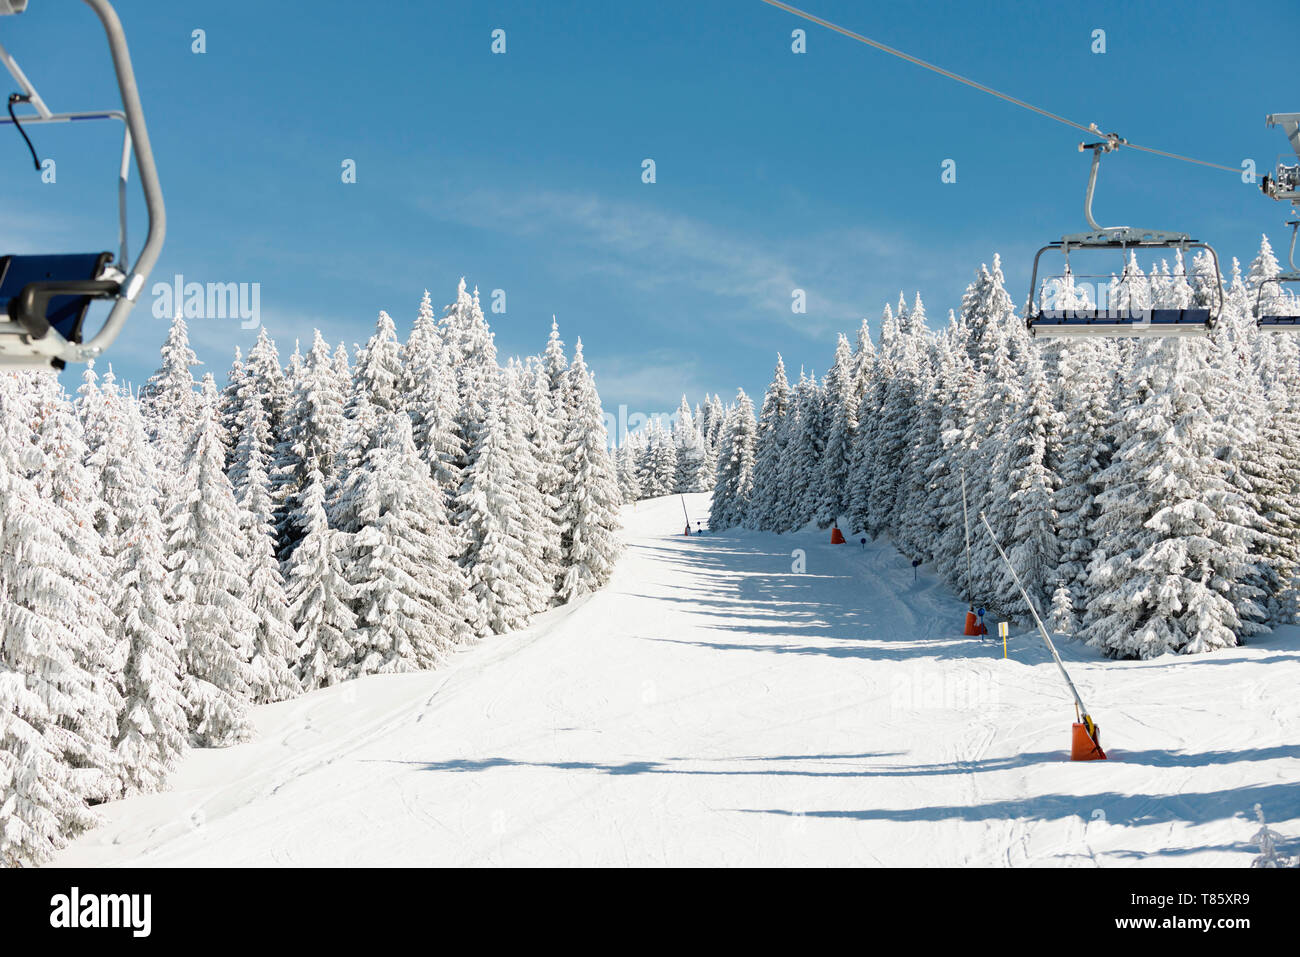 Ski slope Stock Photo